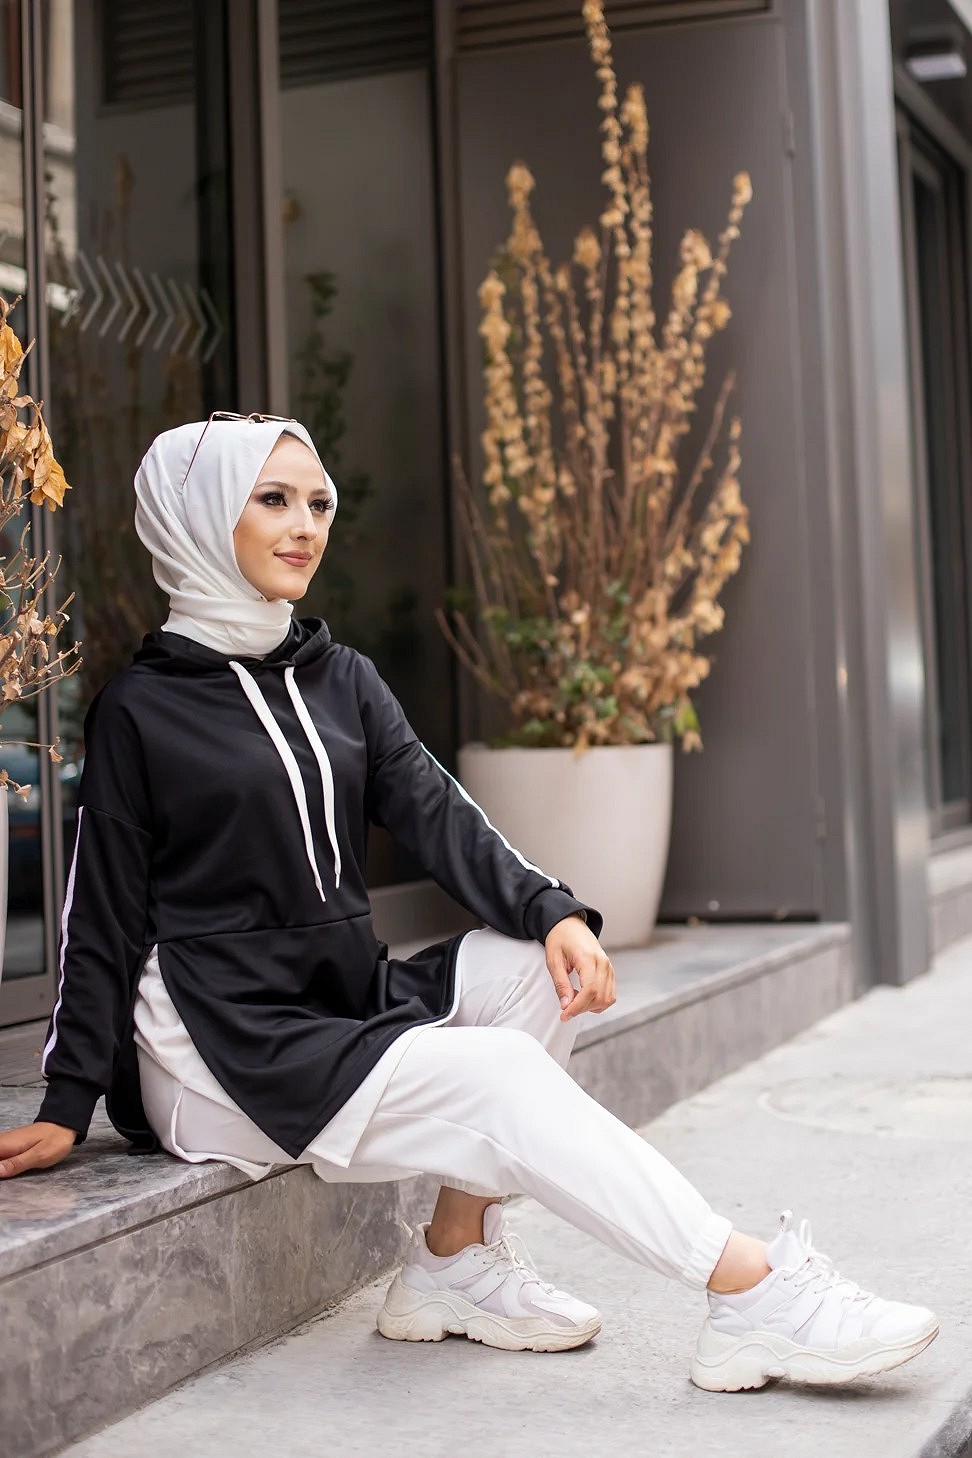 Ensemble sport femme musulmane - Survêtement femme voilée pas cher